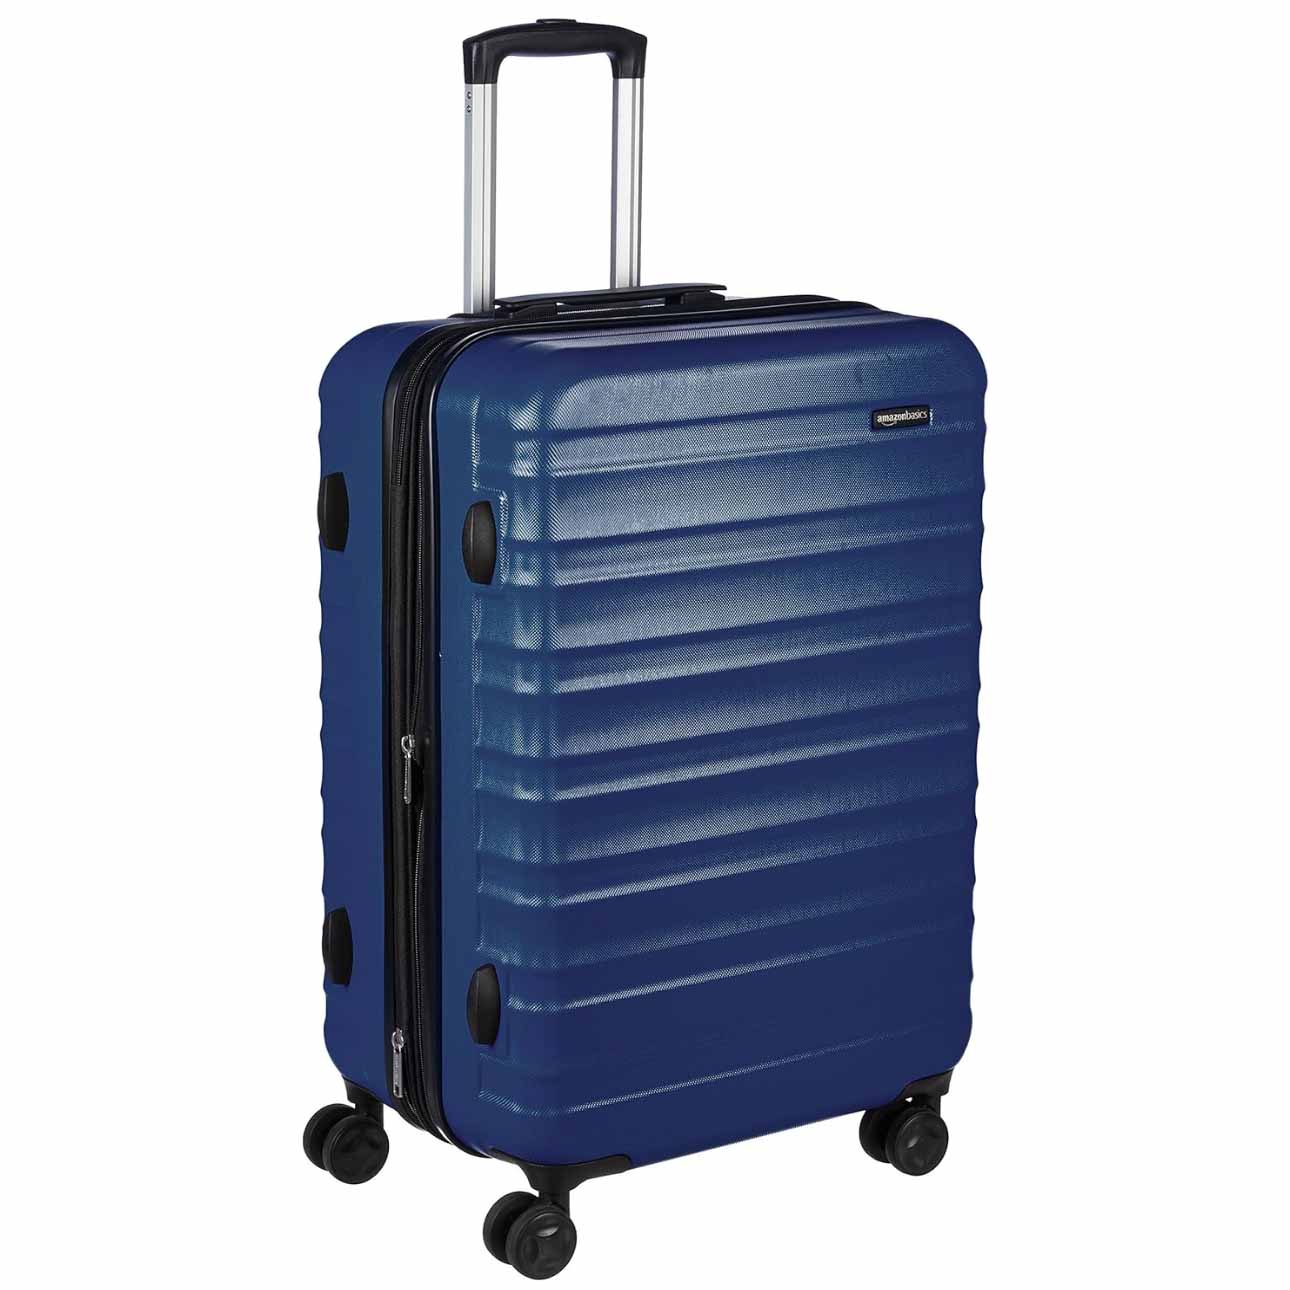 Blue hardside luggage with wheels